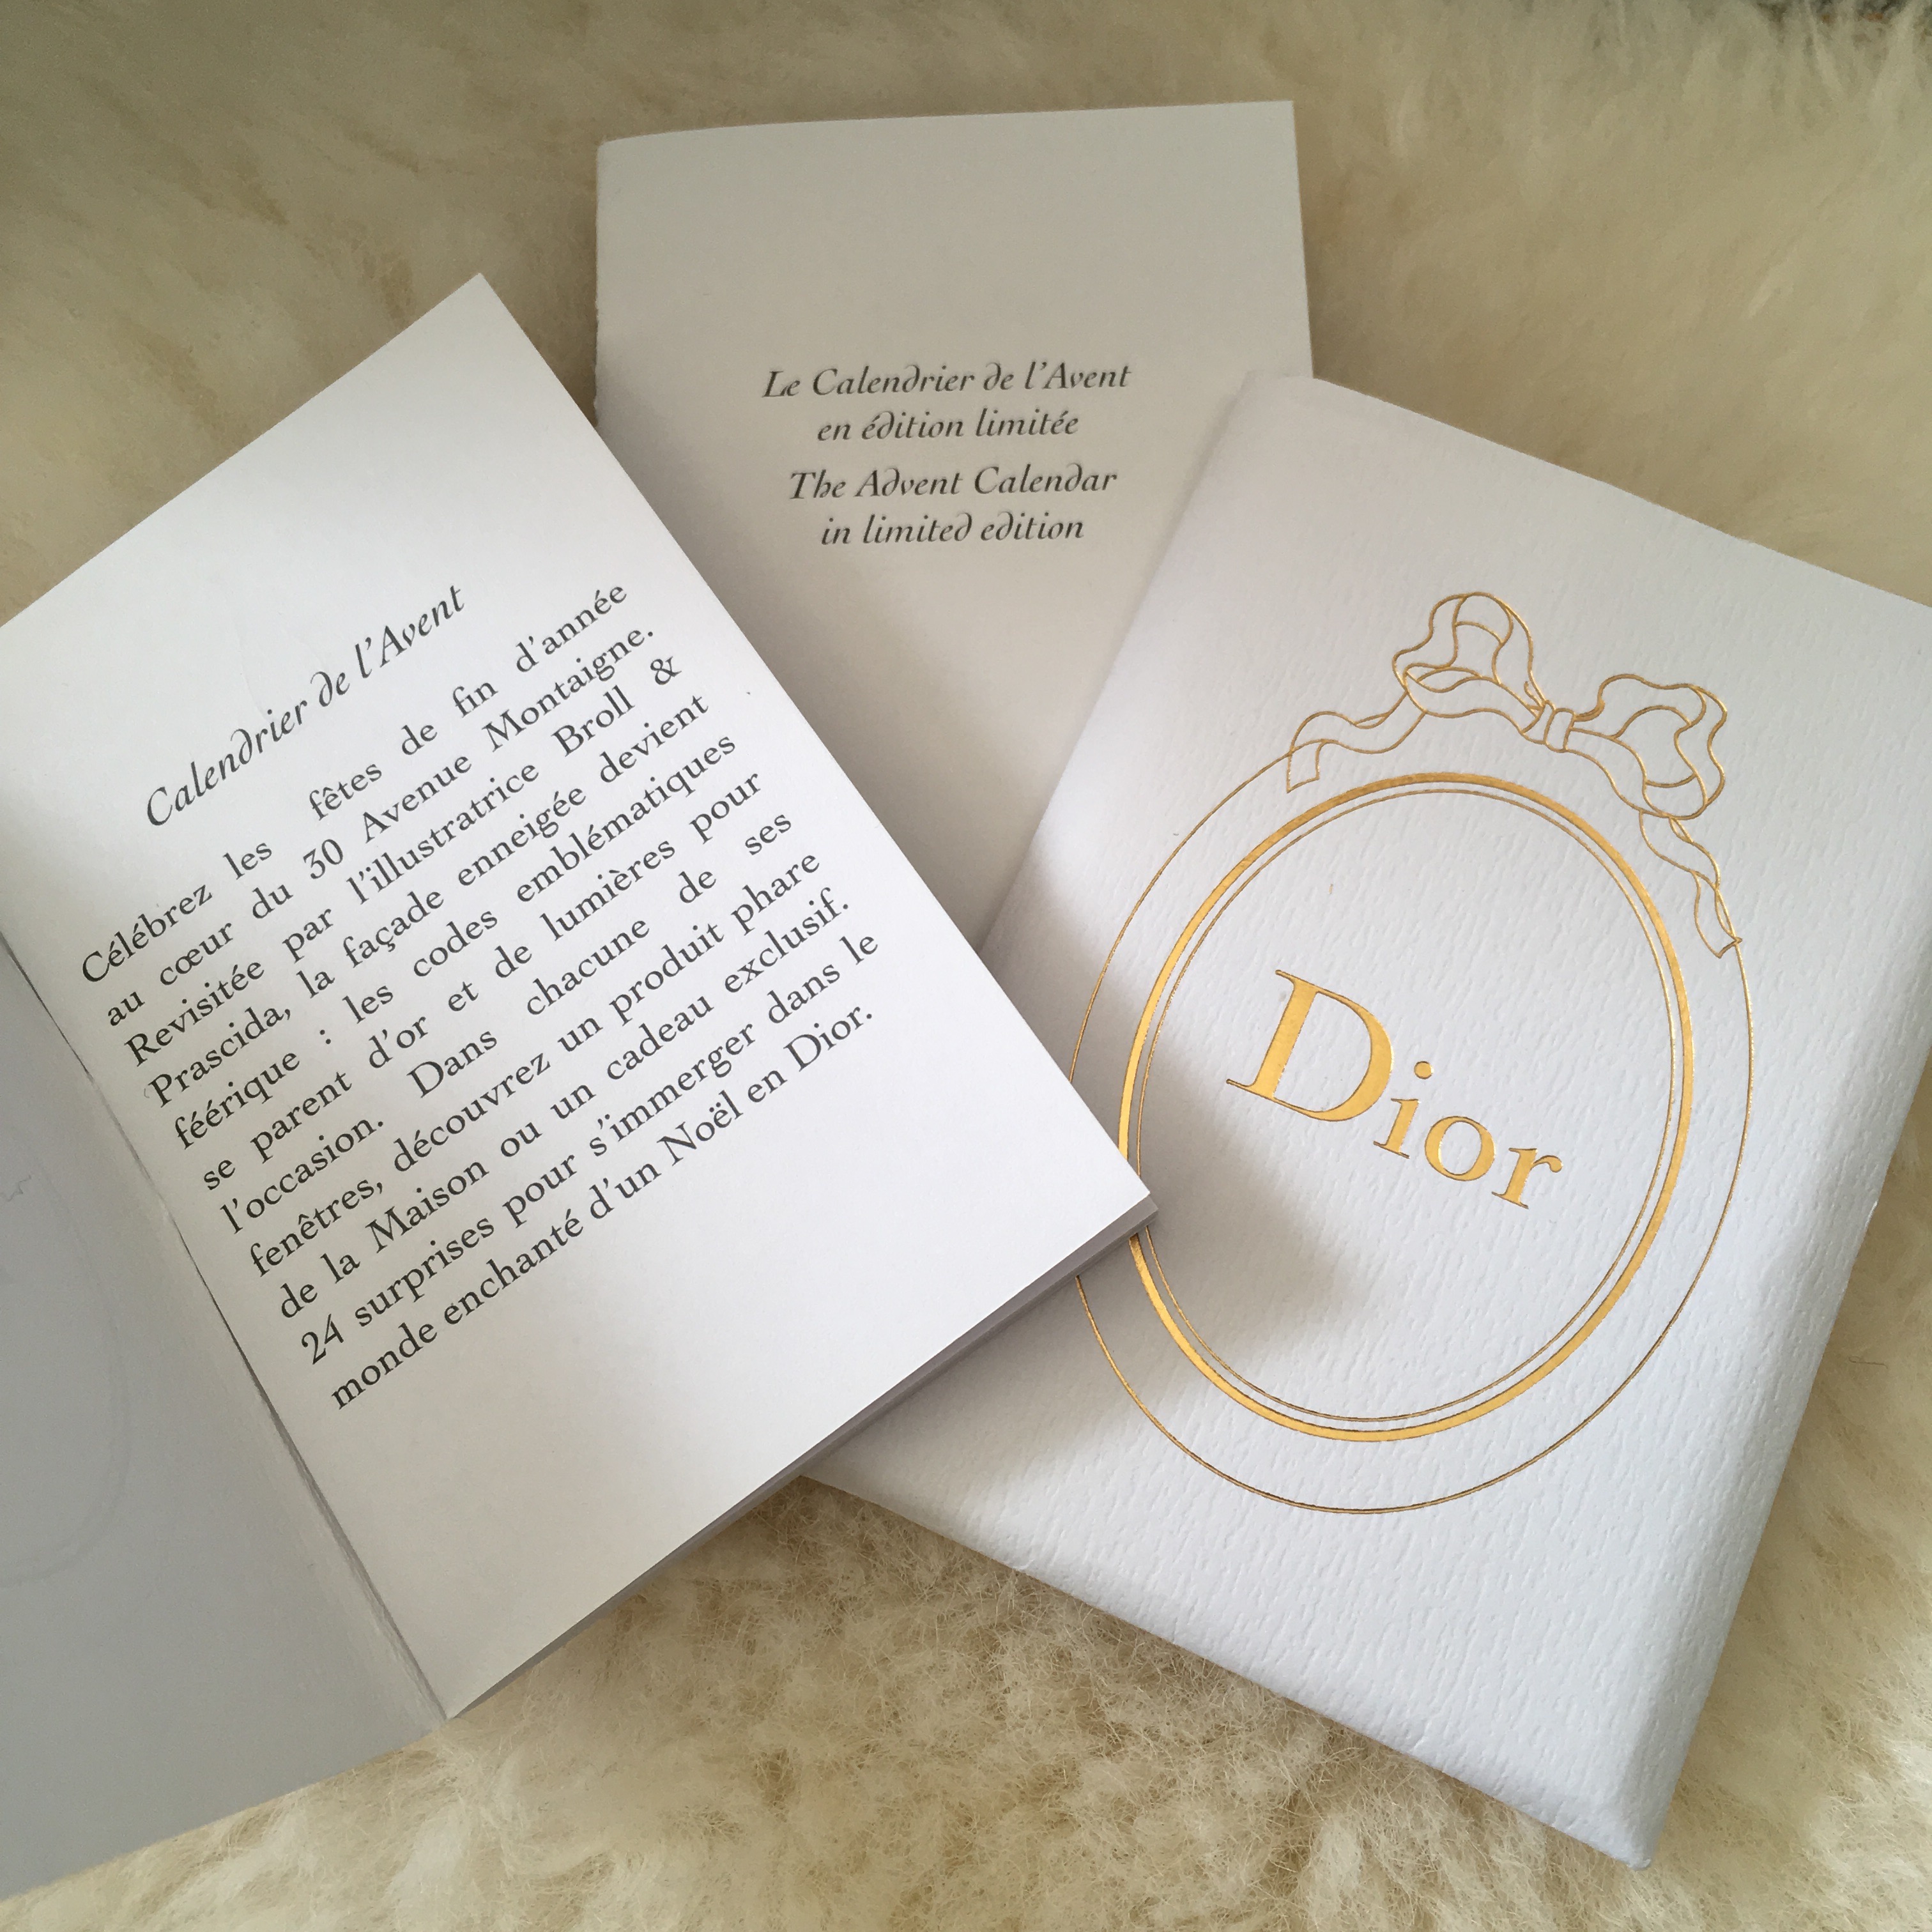 Dior christmas calendar on Behance